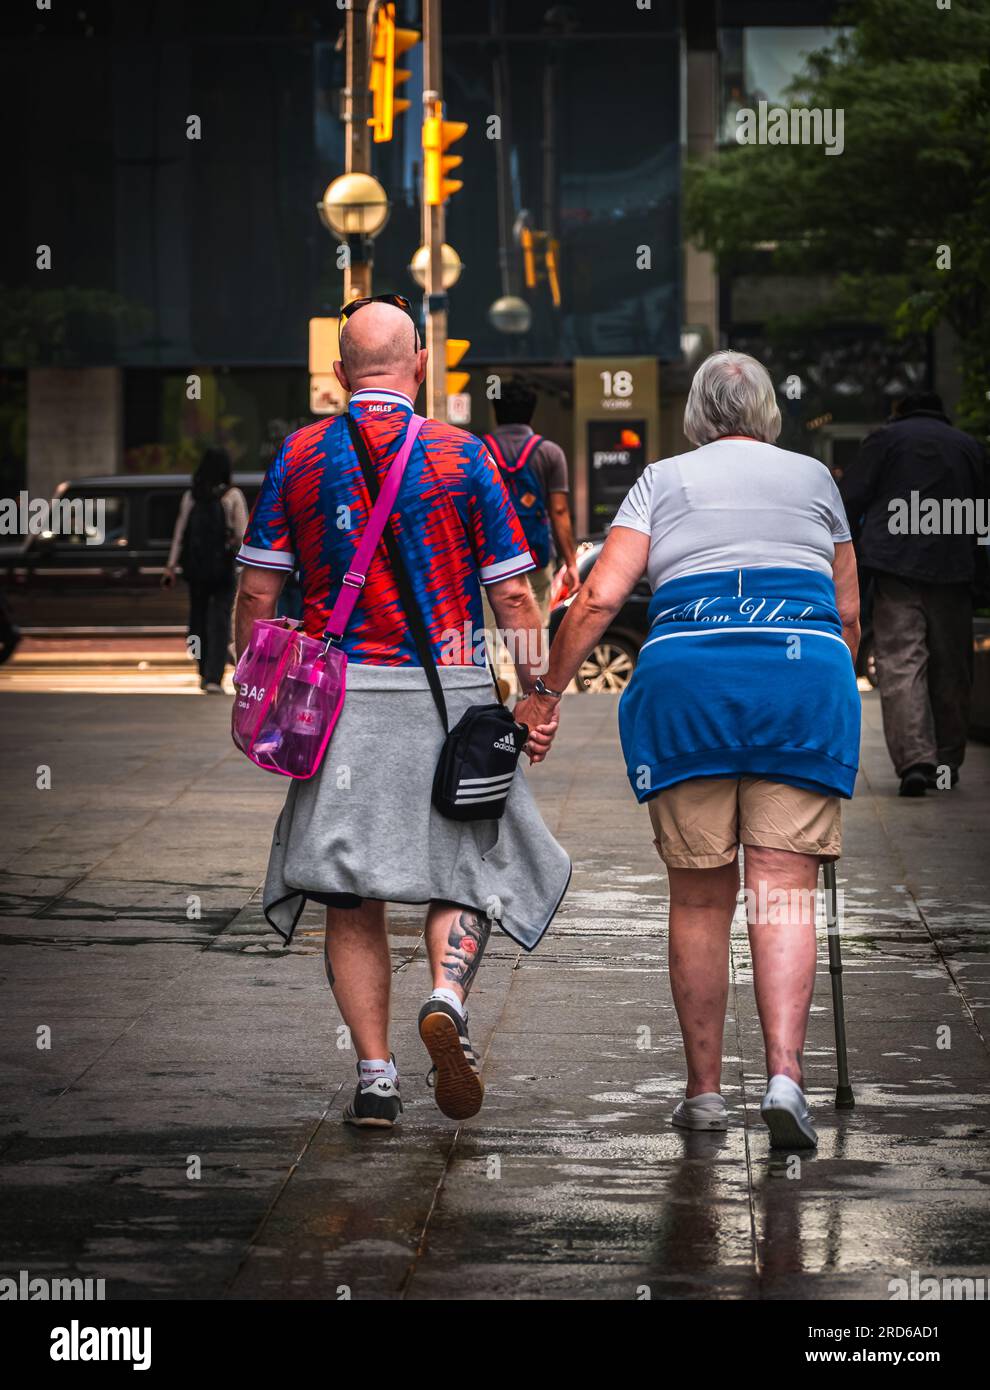 Foto von Senioren, die Händchen halten und draußen gehen. Rückansicht eines alten Paares, das Hand in Hand nach draußen geht. Straßenfoto, Reisefoto Stockfoto